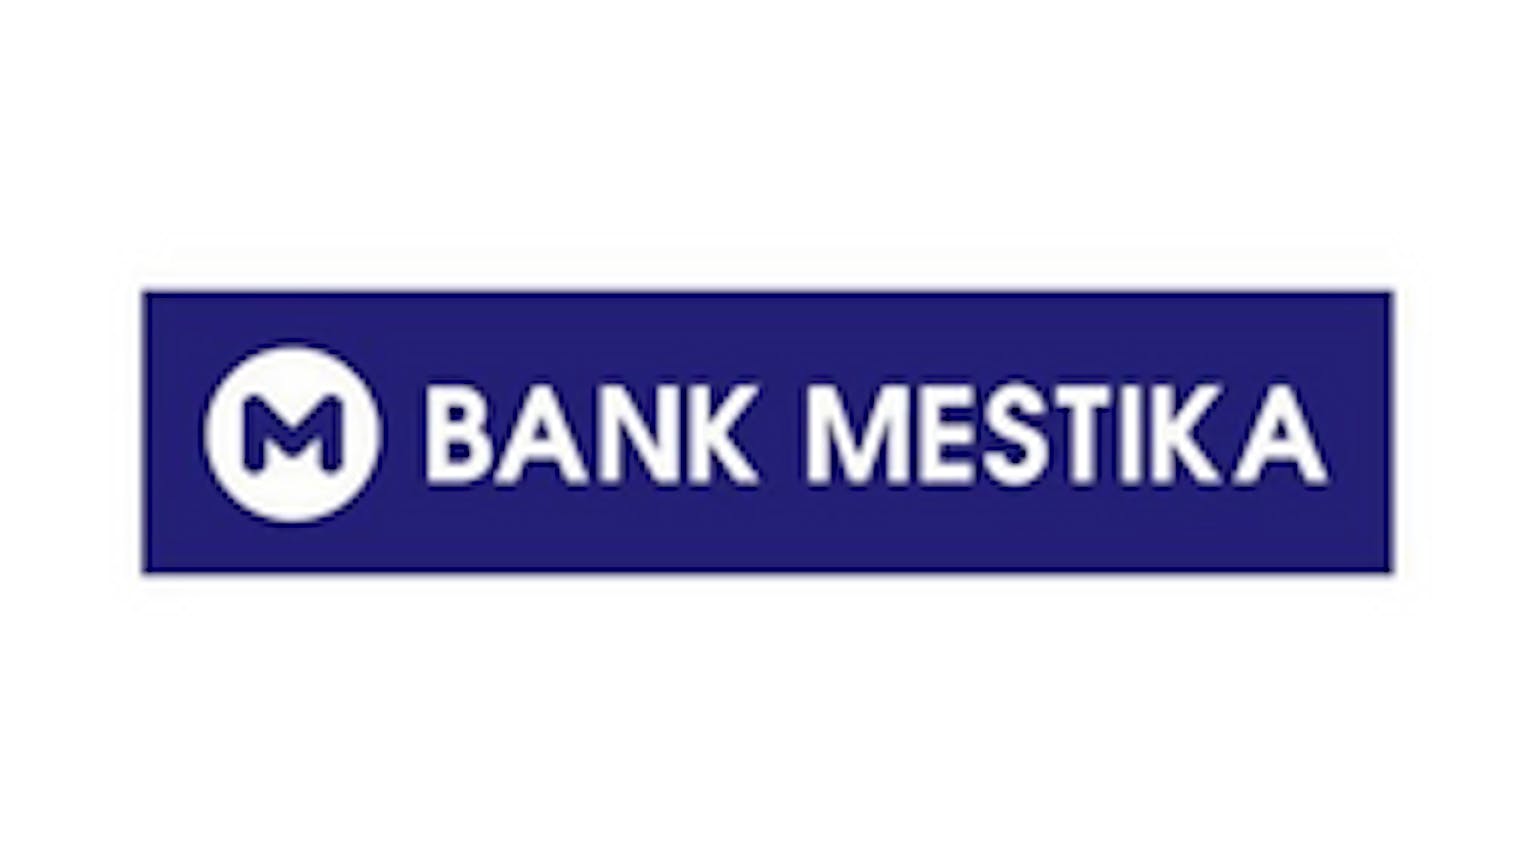 Bank Mestika